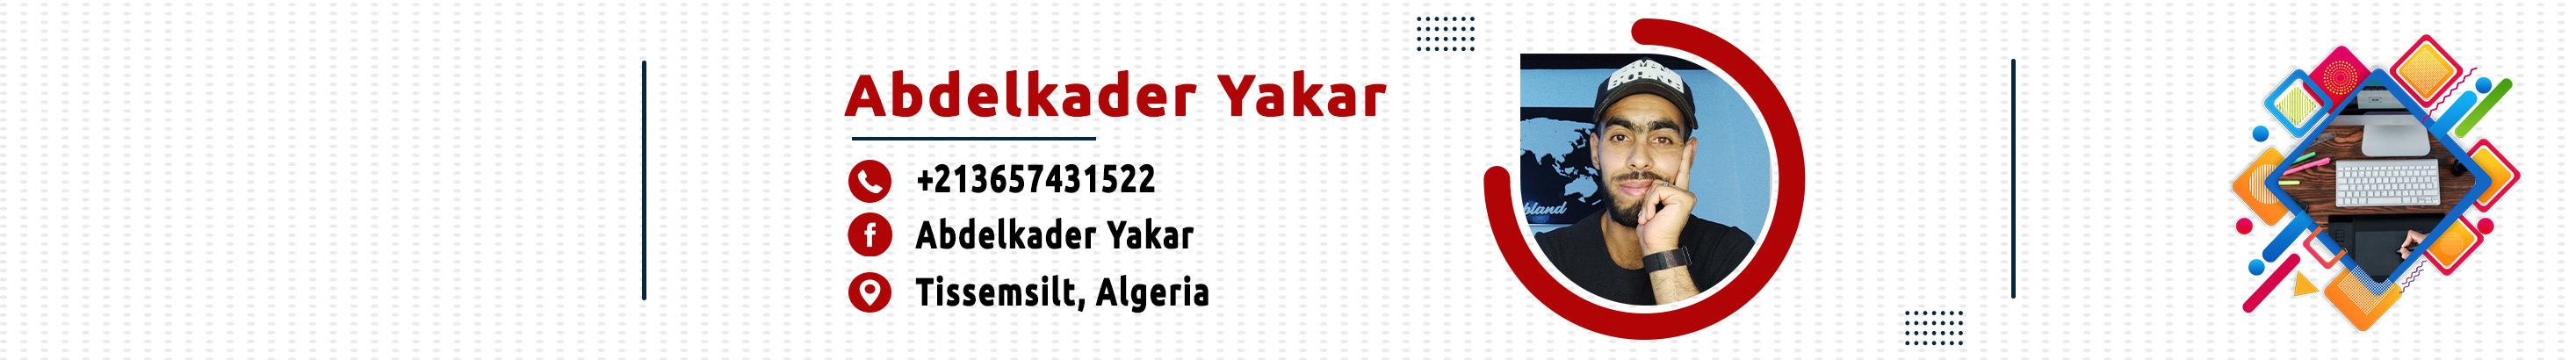 Abdelkader yakar 的个人资料横幅